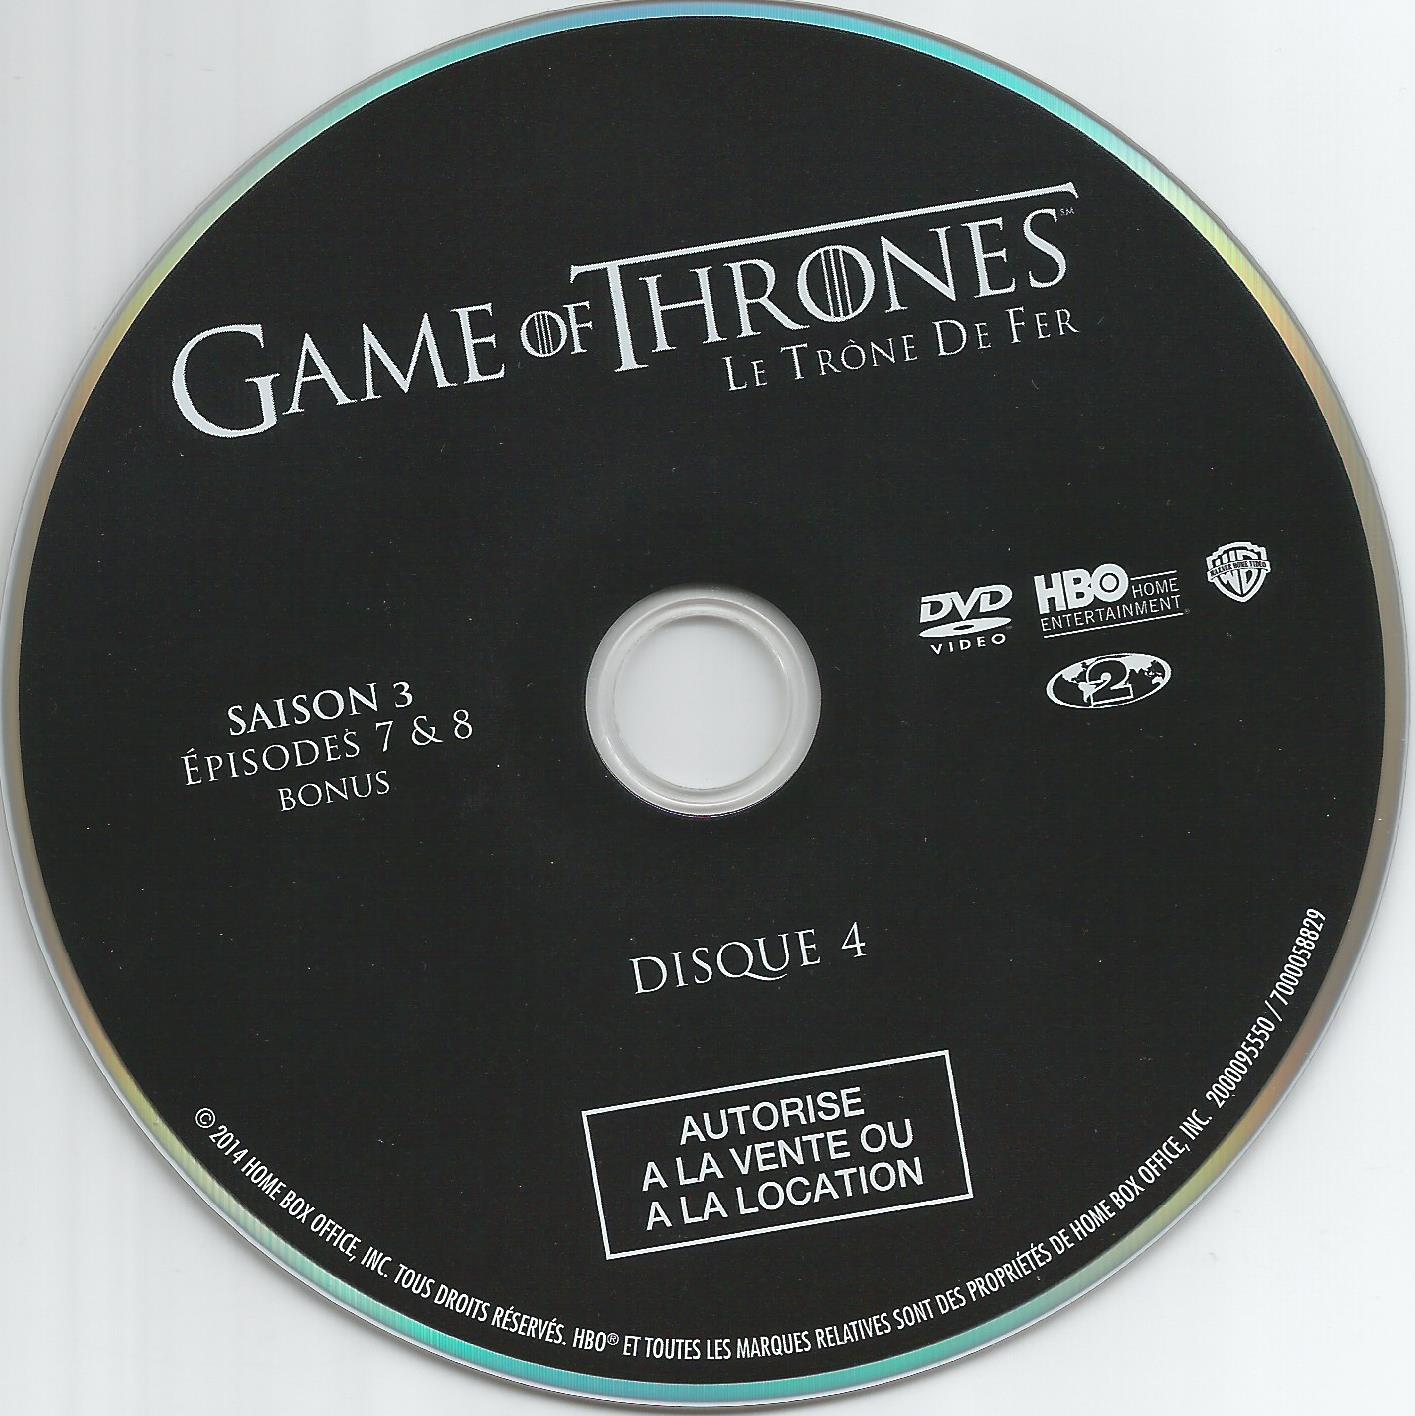 Game of thrones (le trone de fer) Saison 3 DVD 4